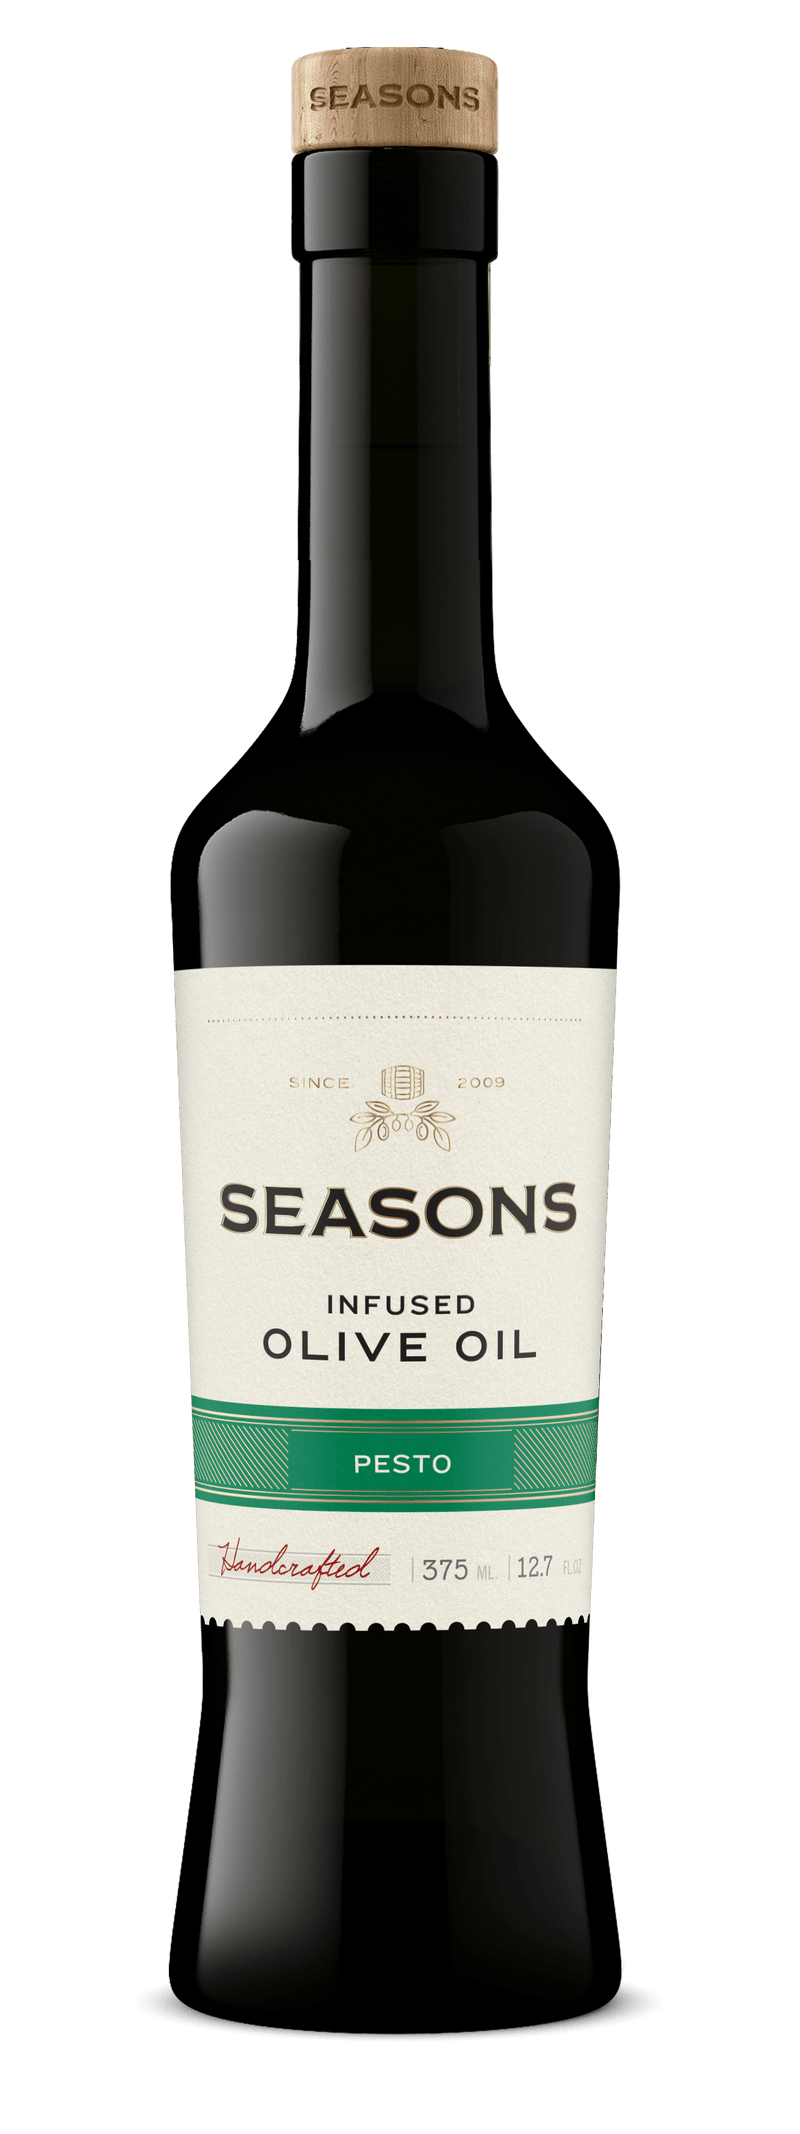 Seasons Infused Olive Oil 375mL Pesto